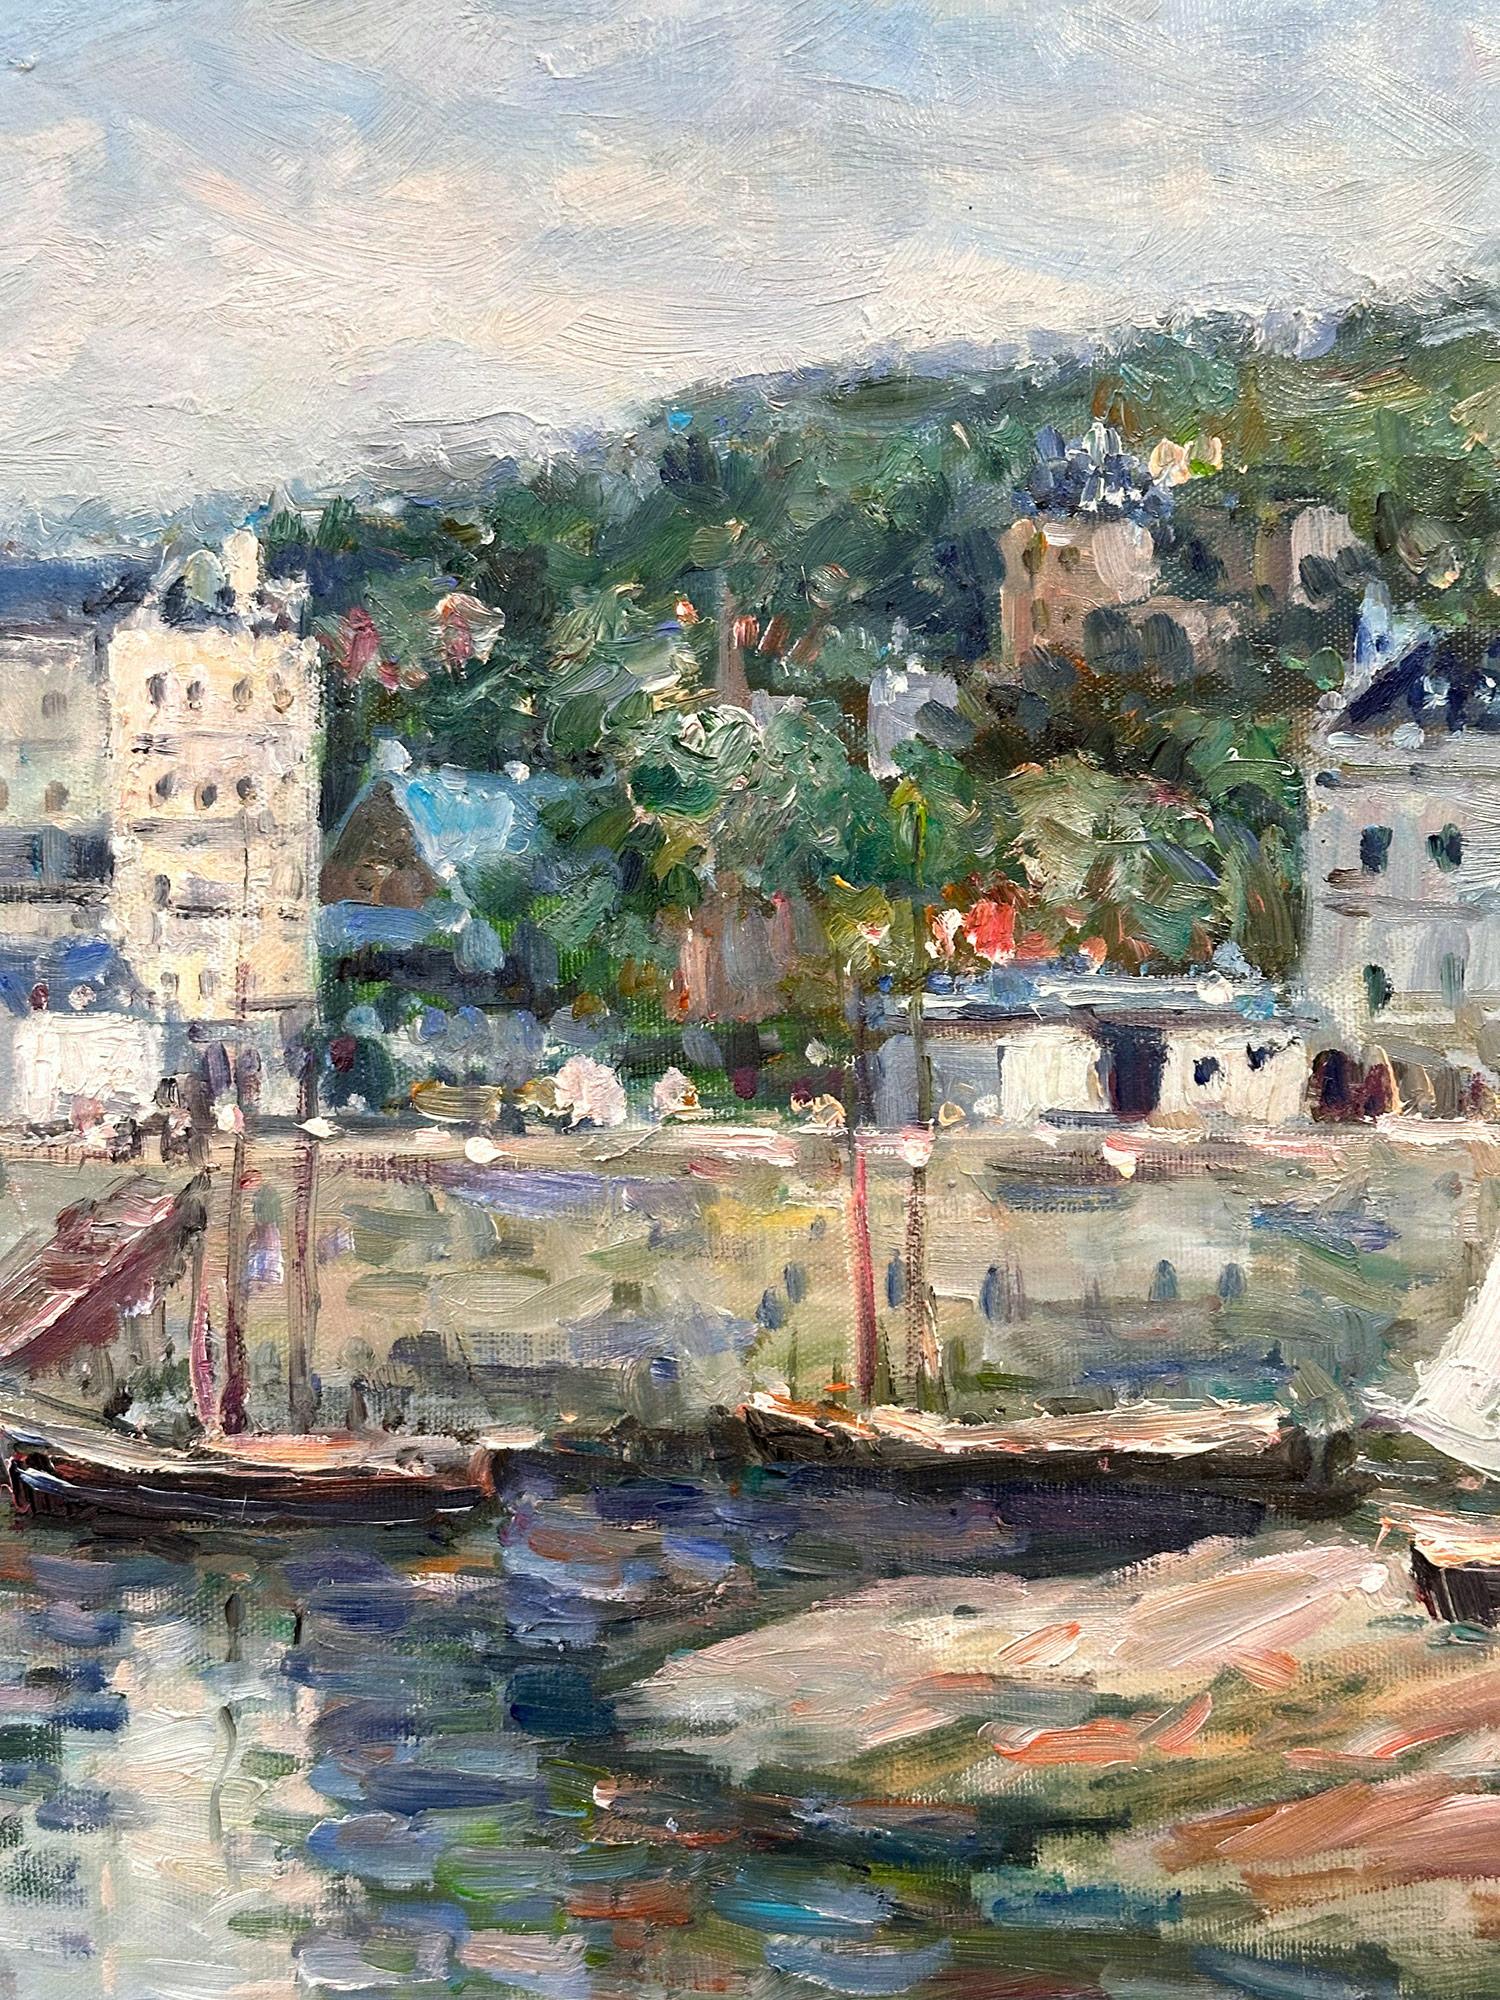 Une peinture à l'huile magistrale représentant une scène portuaire méditerranéenne de Trouville-sur-Mer, communément appelée Trouville, avec les bâtiments de la ville à l'arrière-plan et des voiliers, par l'artiste britannico-américain John Clymer.